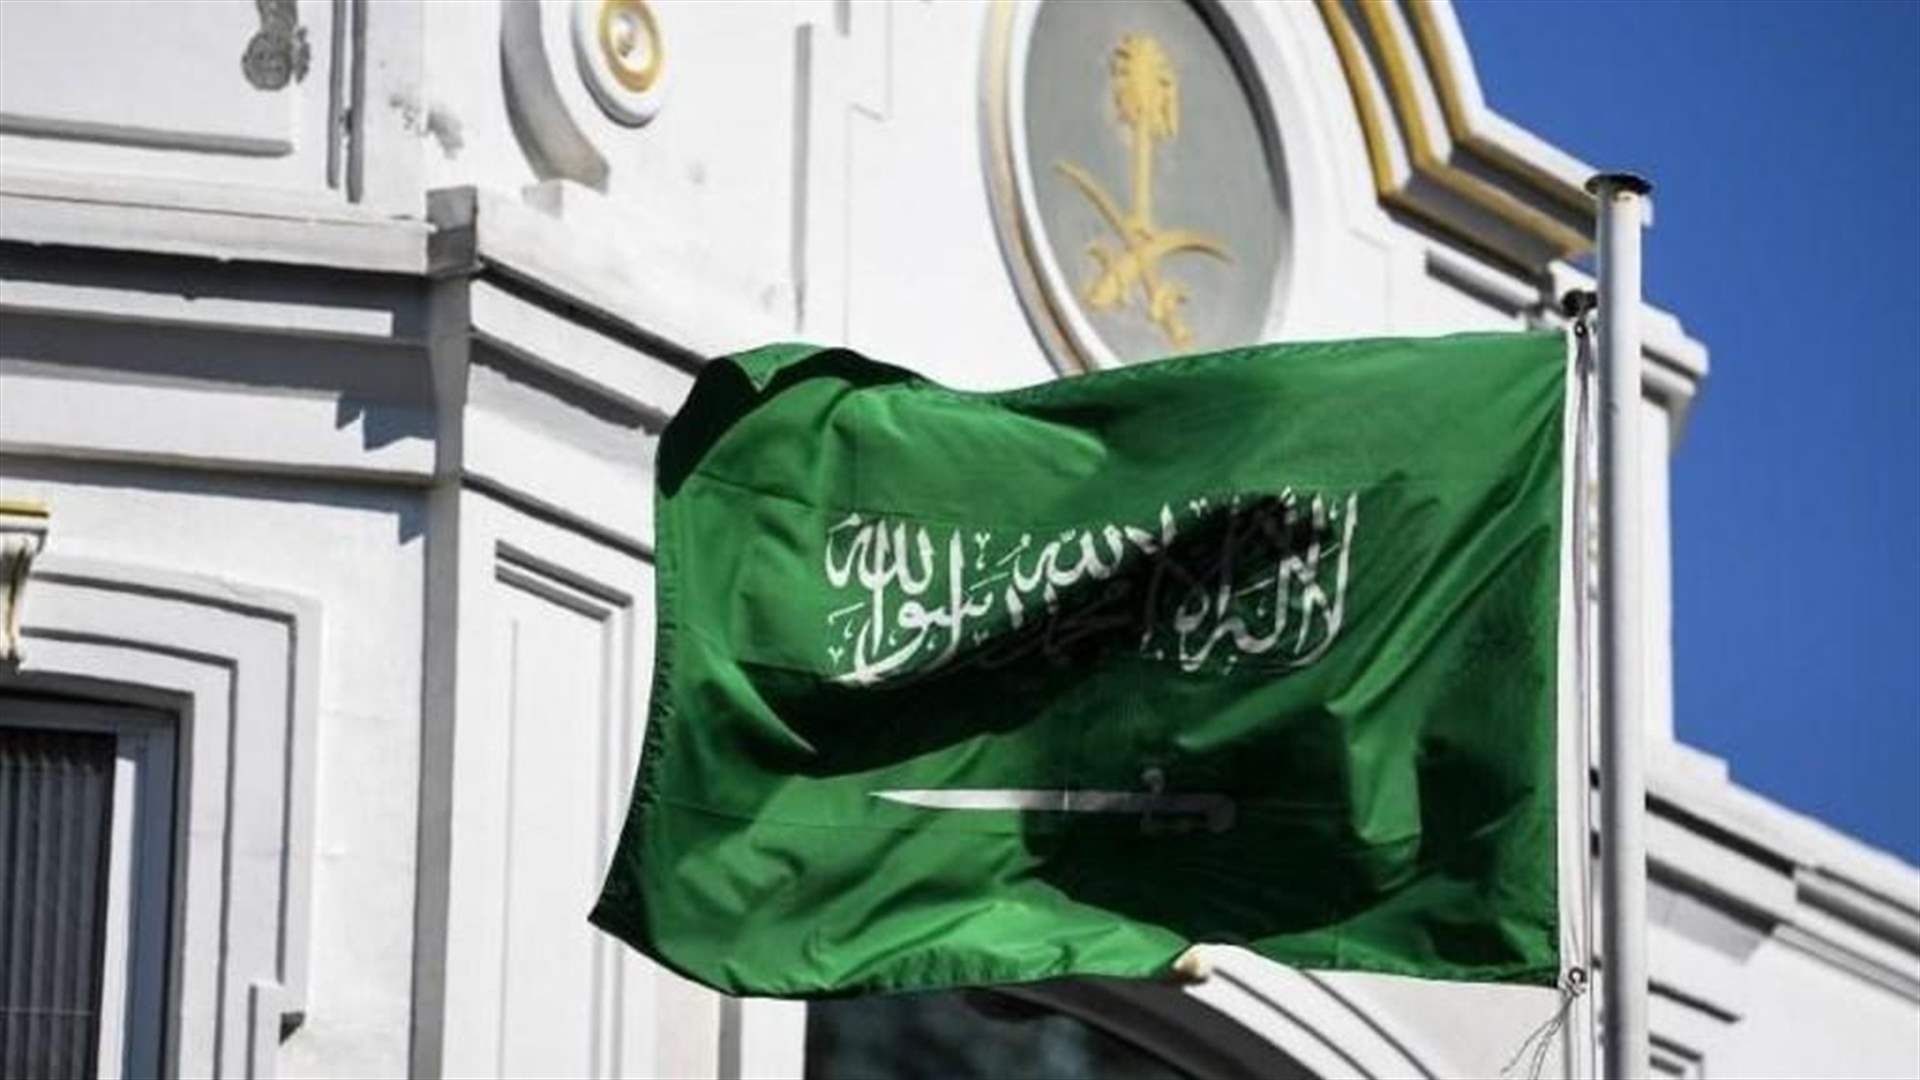 السفارة السعودية في لبنان تطالب رعاياها بمغادرة الأراضي اللبنانية بسرعة